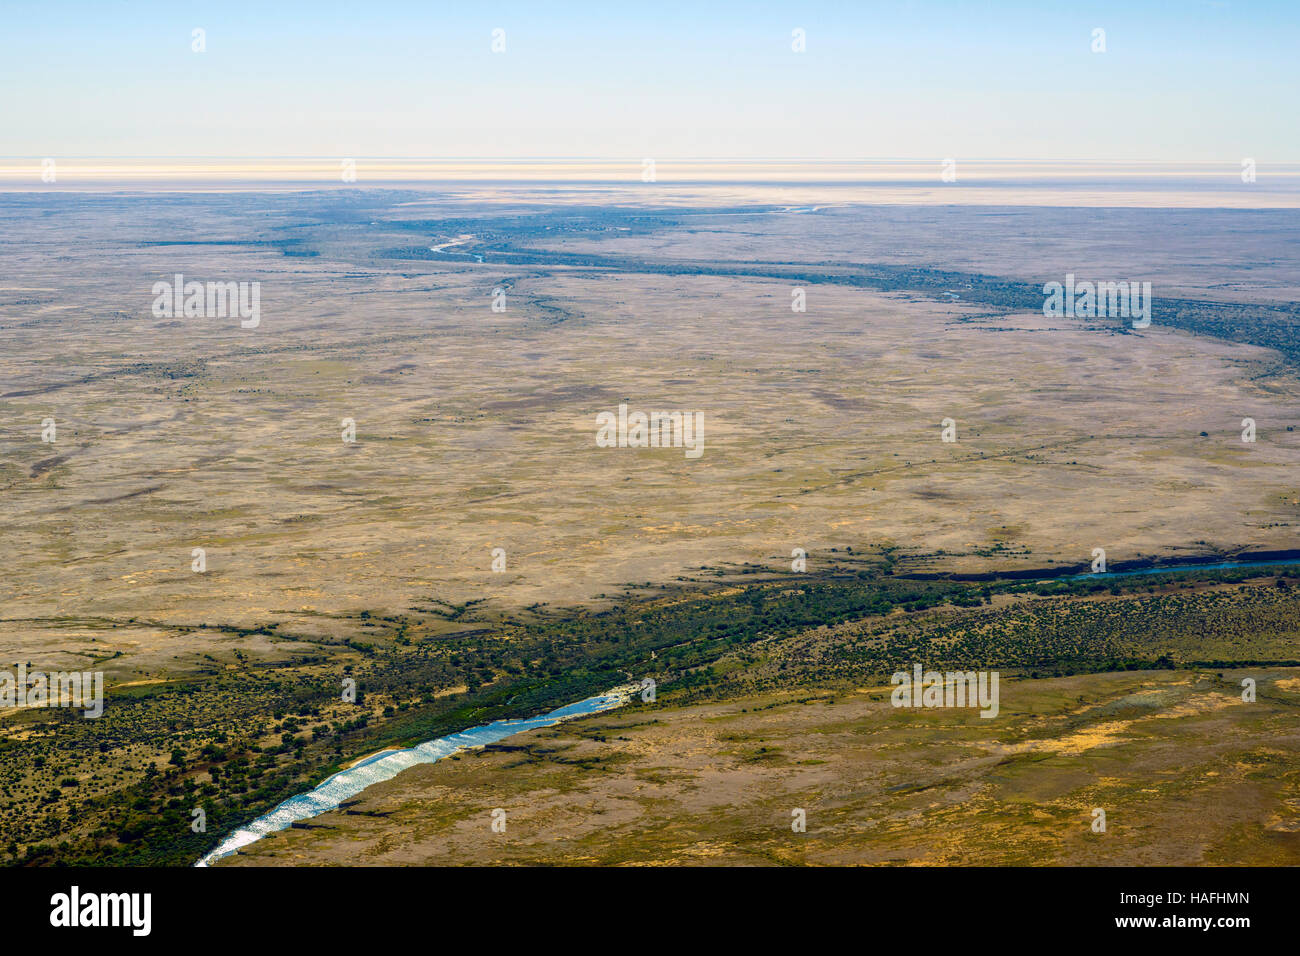 Une vue aérienne de ruisseaux traversant la région aride du désert de l'Outback australien en Australie du Sud du grand nord canadien. Banque D'Images